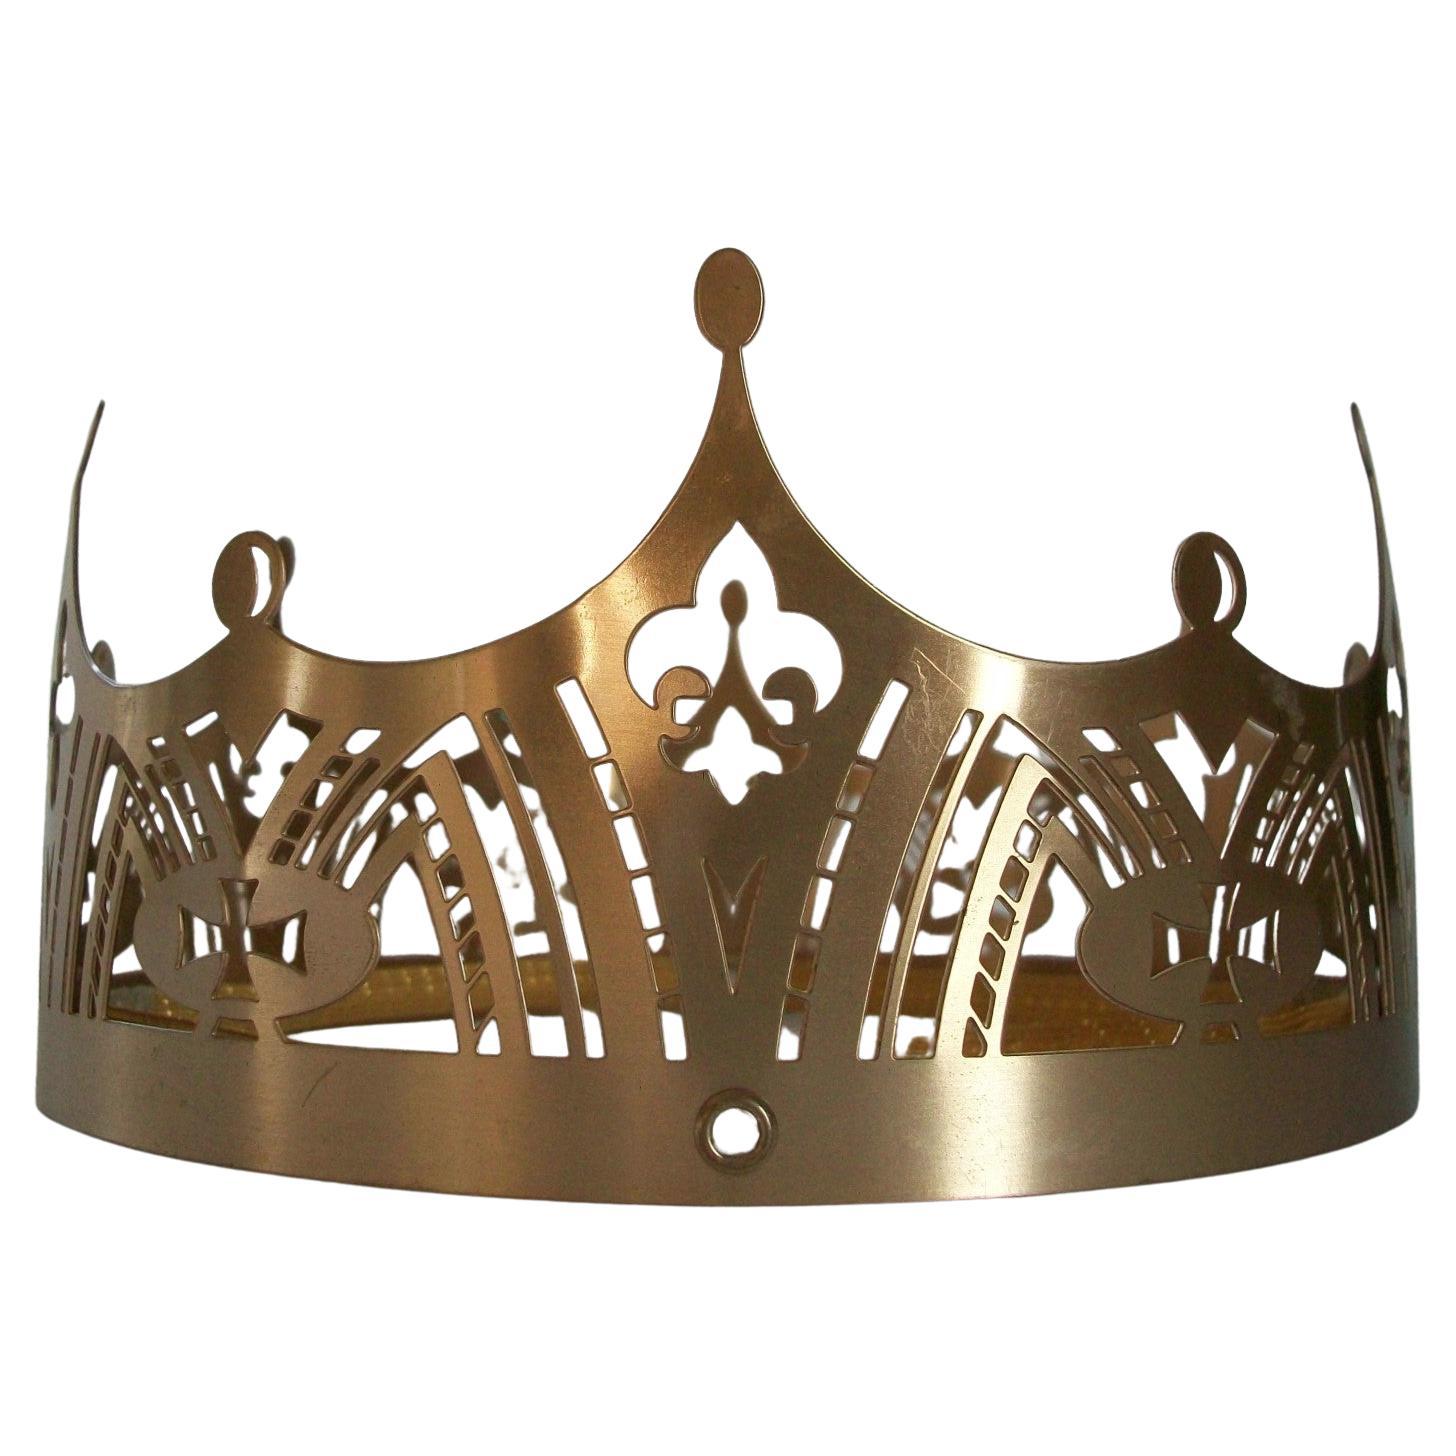 Französische Krone aus durchbrochenem Metall im gotischen Revival-Stil – Europa – spätes 20. Jahrhundert